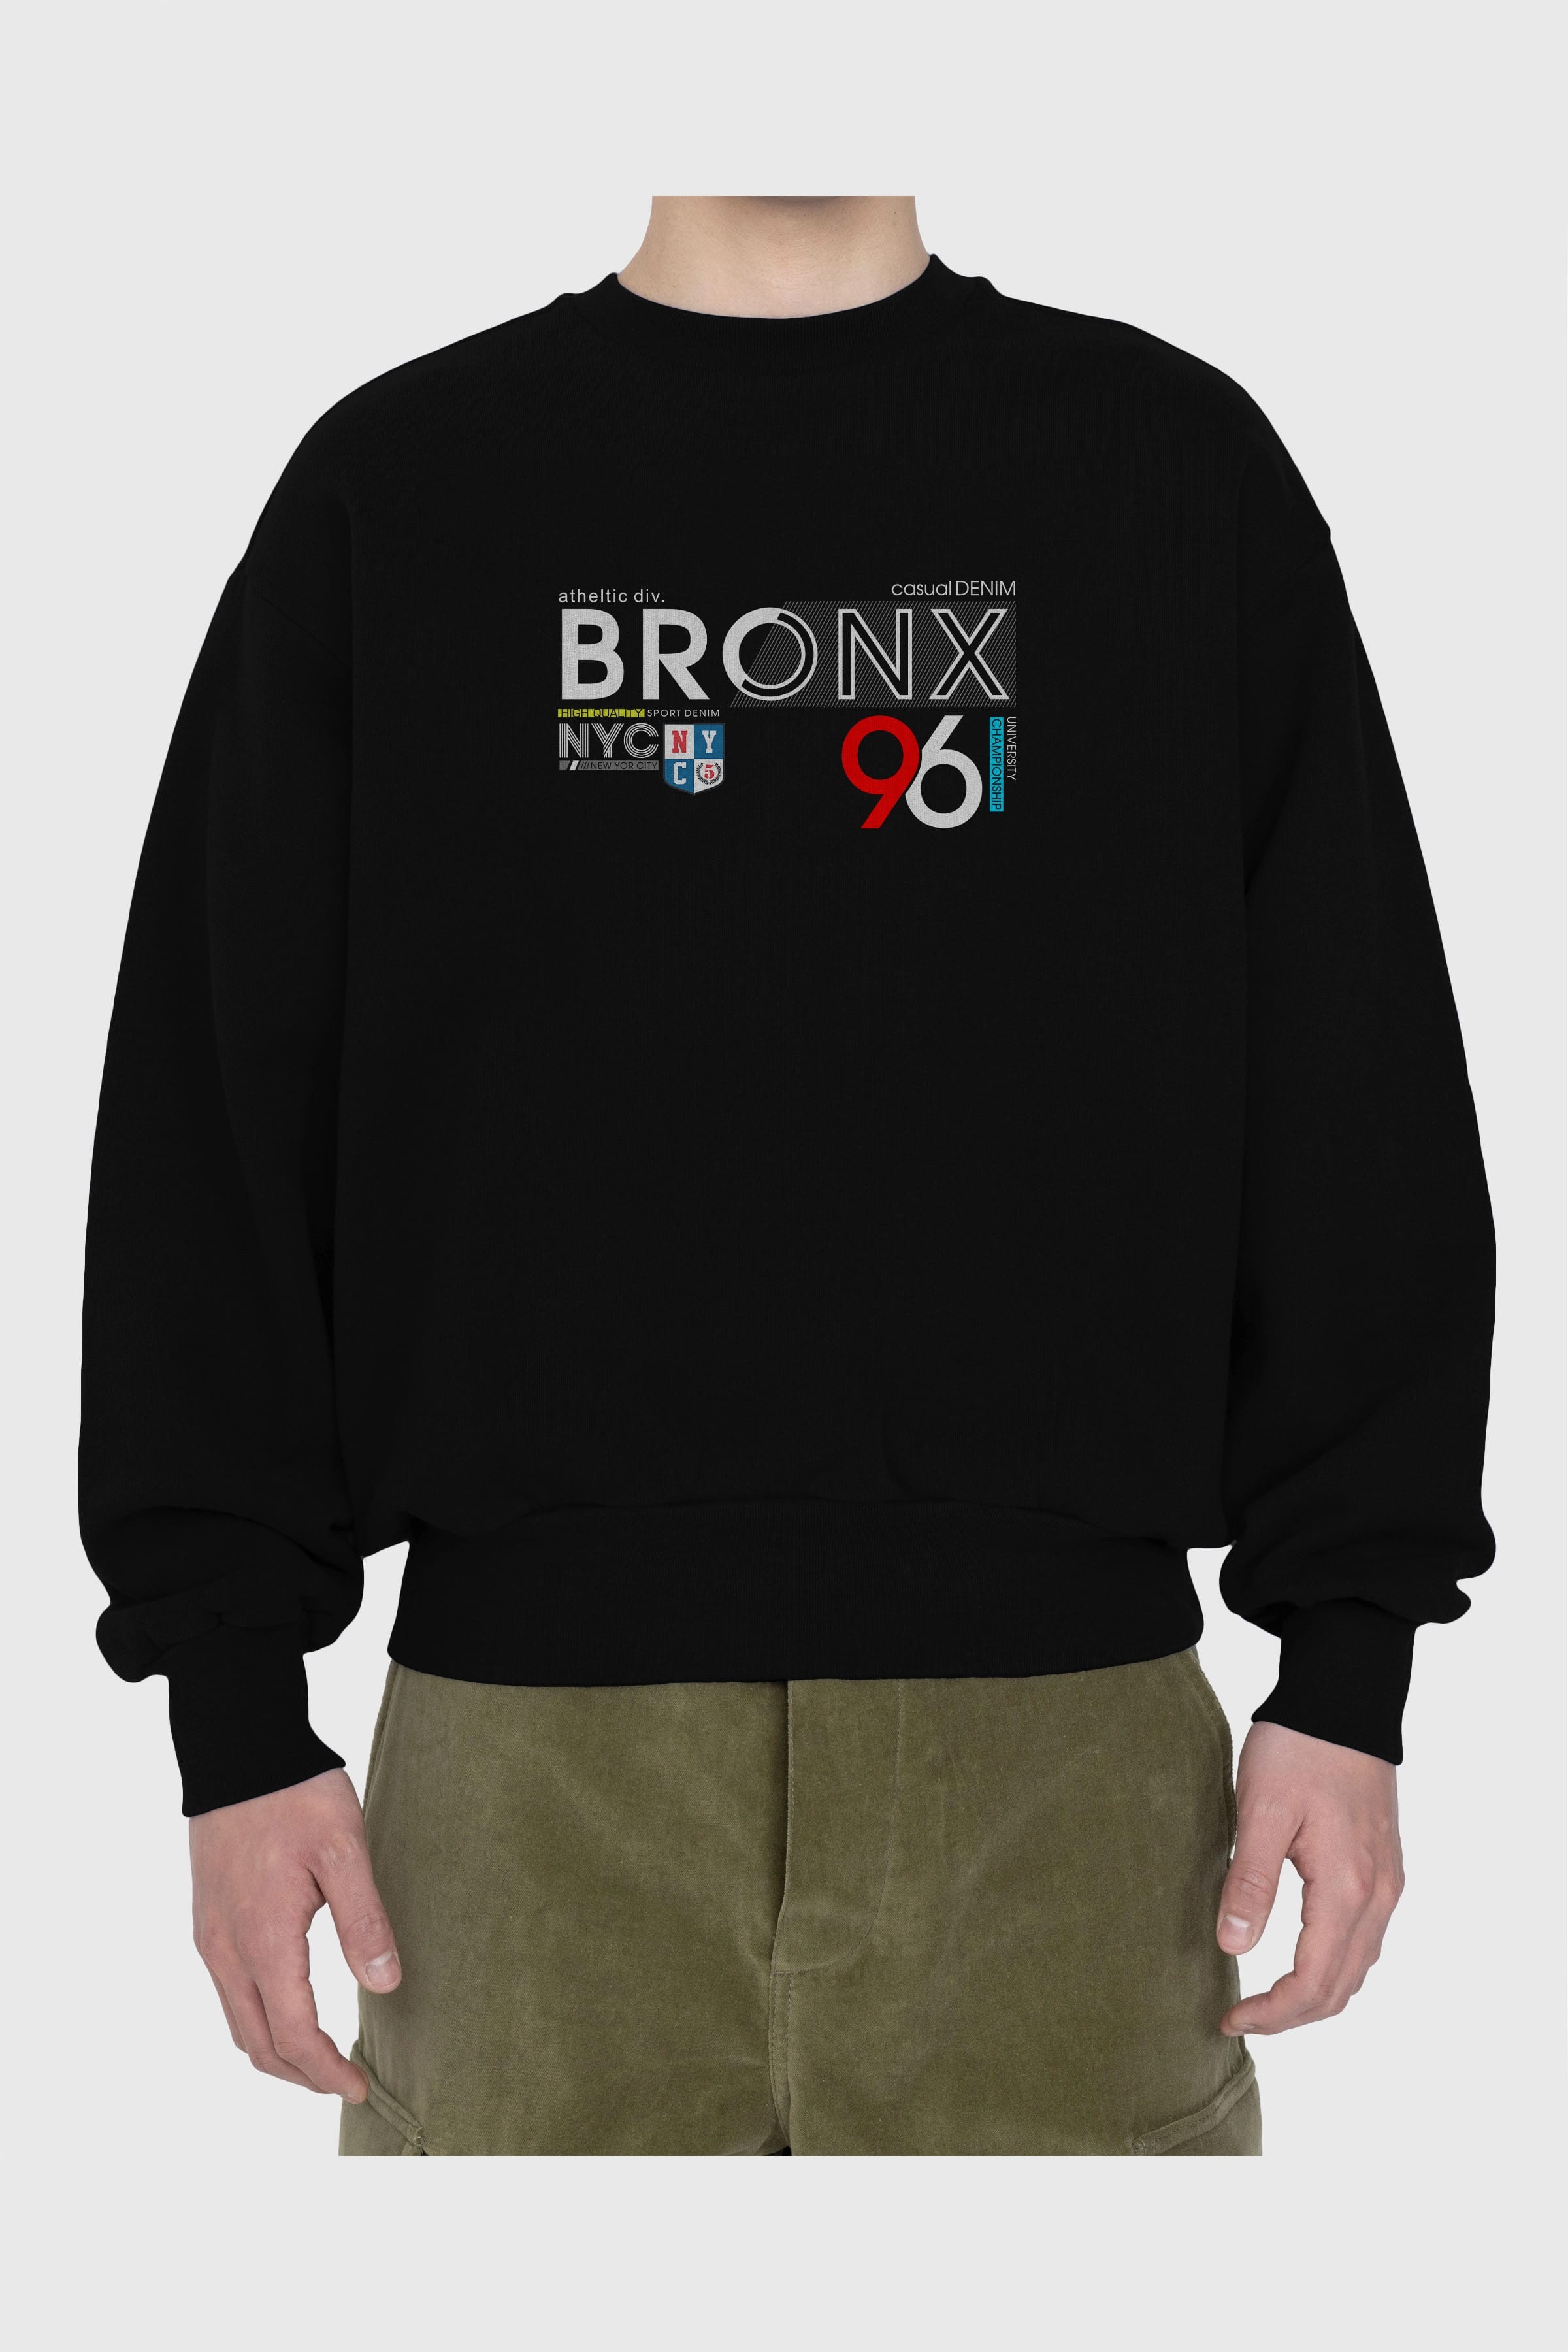 Bronx 96 Ön Baskılı Oversize Sweatshirt Erkek Kadın Unisex